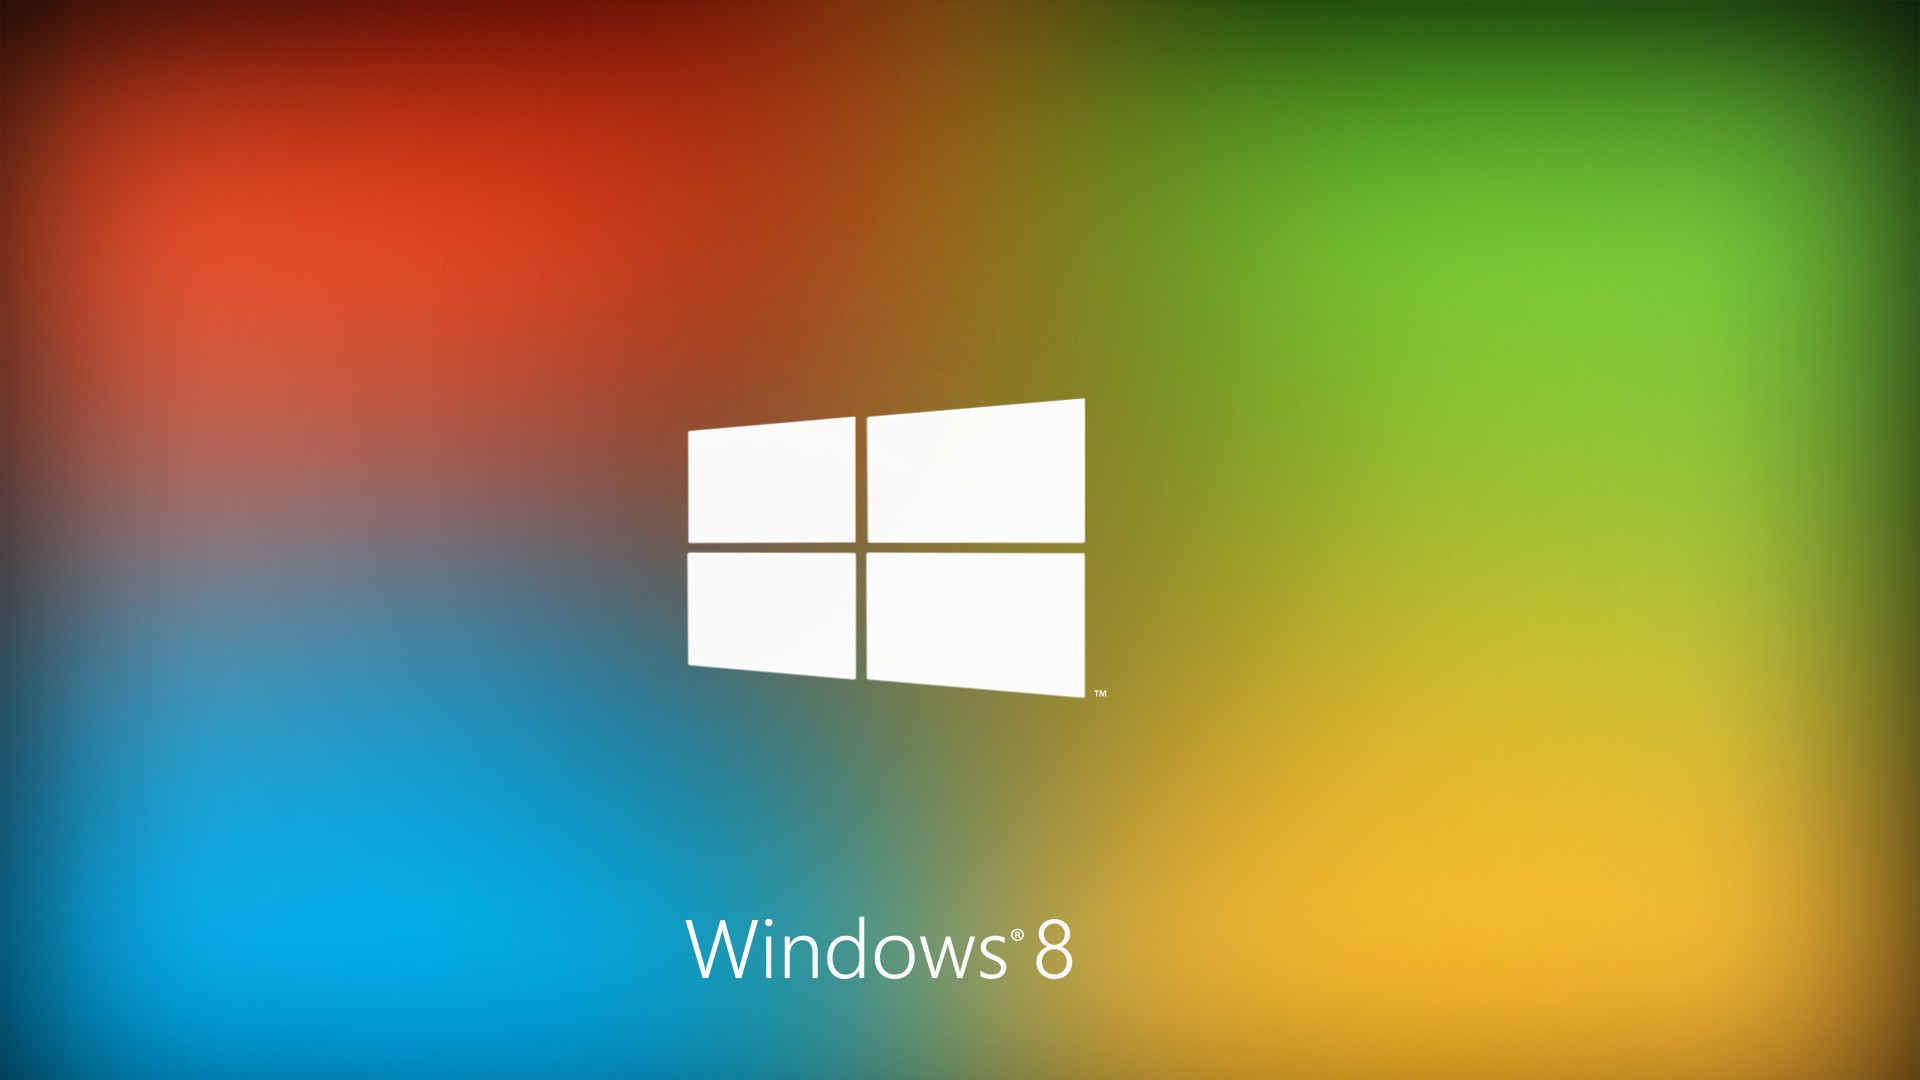 Best Windows 8 Logo 2013 HD Wallpaper Best Windows 8 Logo 2013